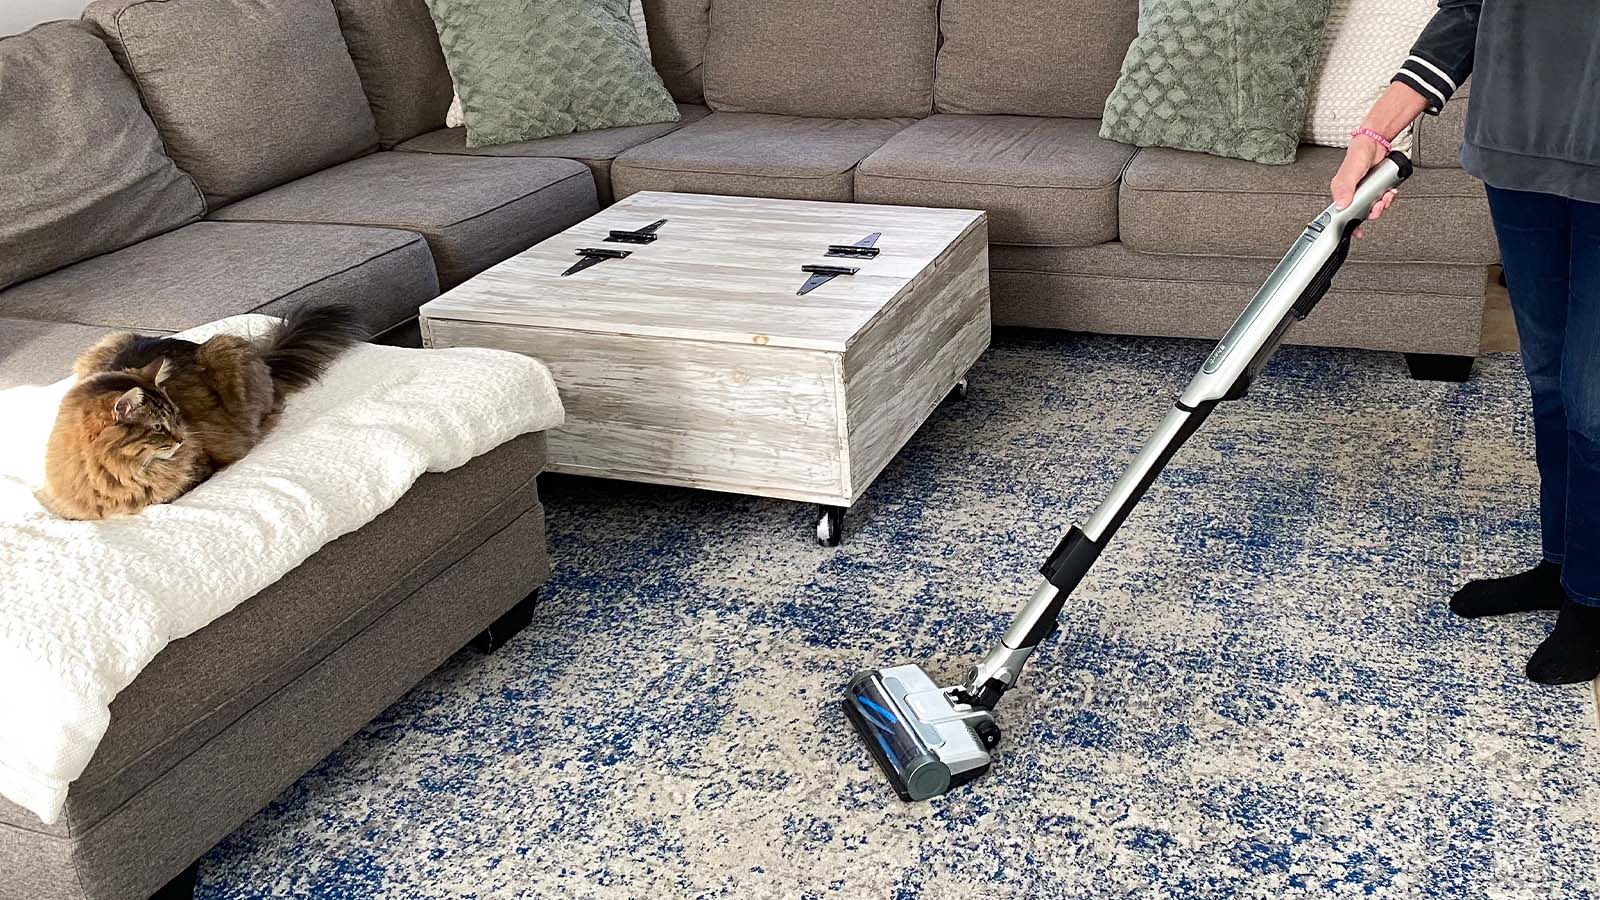 Best Cordless Stick Vacuum In 2022, Best Stick Vacuum For Pet Hair And Hardwood Floors Carpet